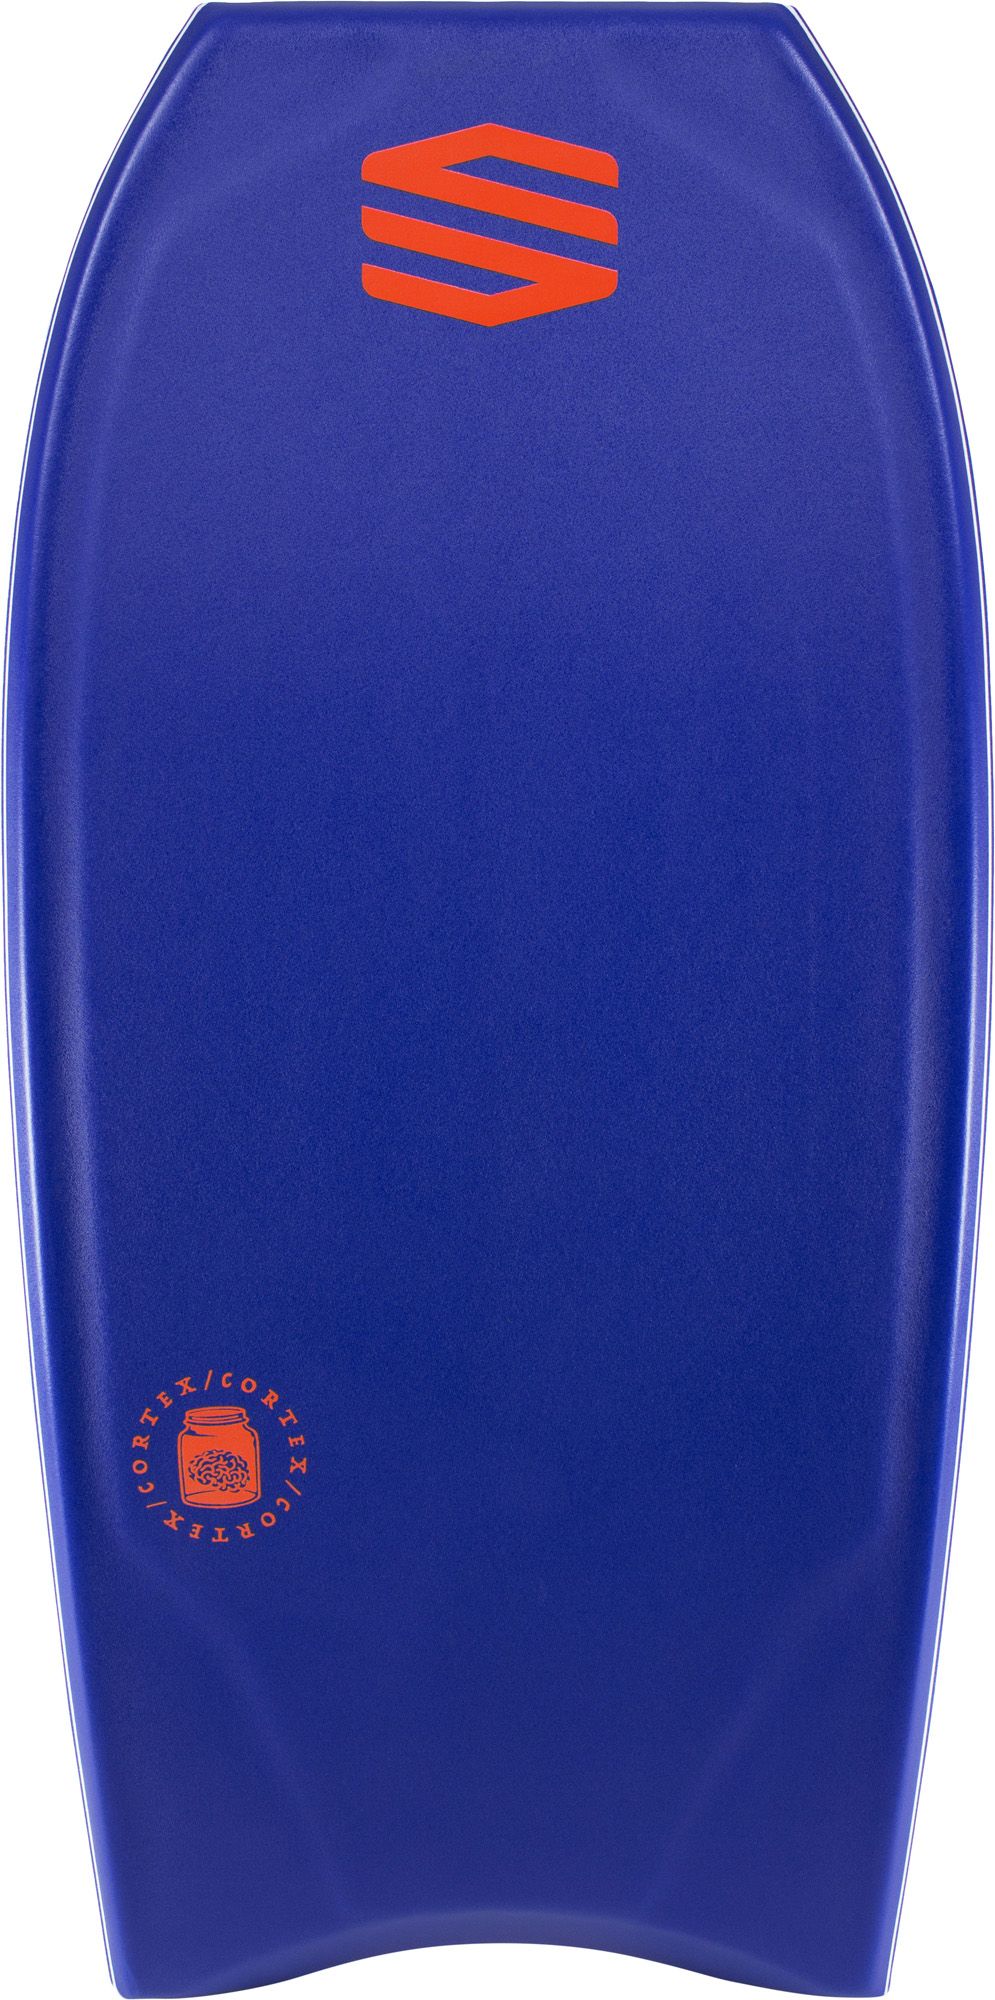 Planche de bodyboard Cortex PE Dark blue / fluro red - Improve Series 